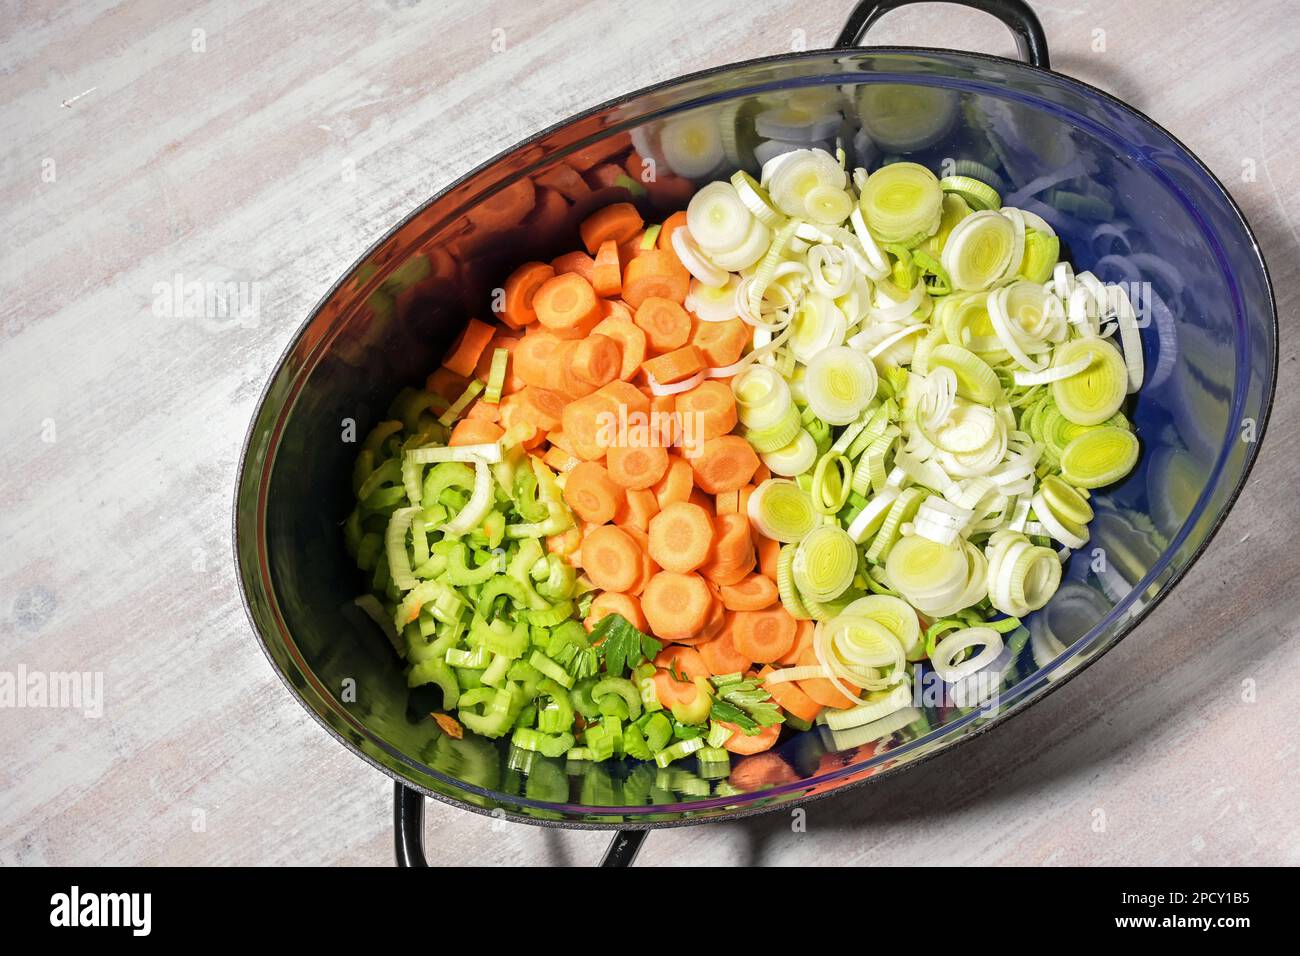 Gehacktes rohes Gemüse wie Karotten, Sellerie und Lauch in einem Braten für eine geschmorte Suppe oder ein Eintopfgericht, Kochkonzept für zu Hause, Blick von oben Stockfoto